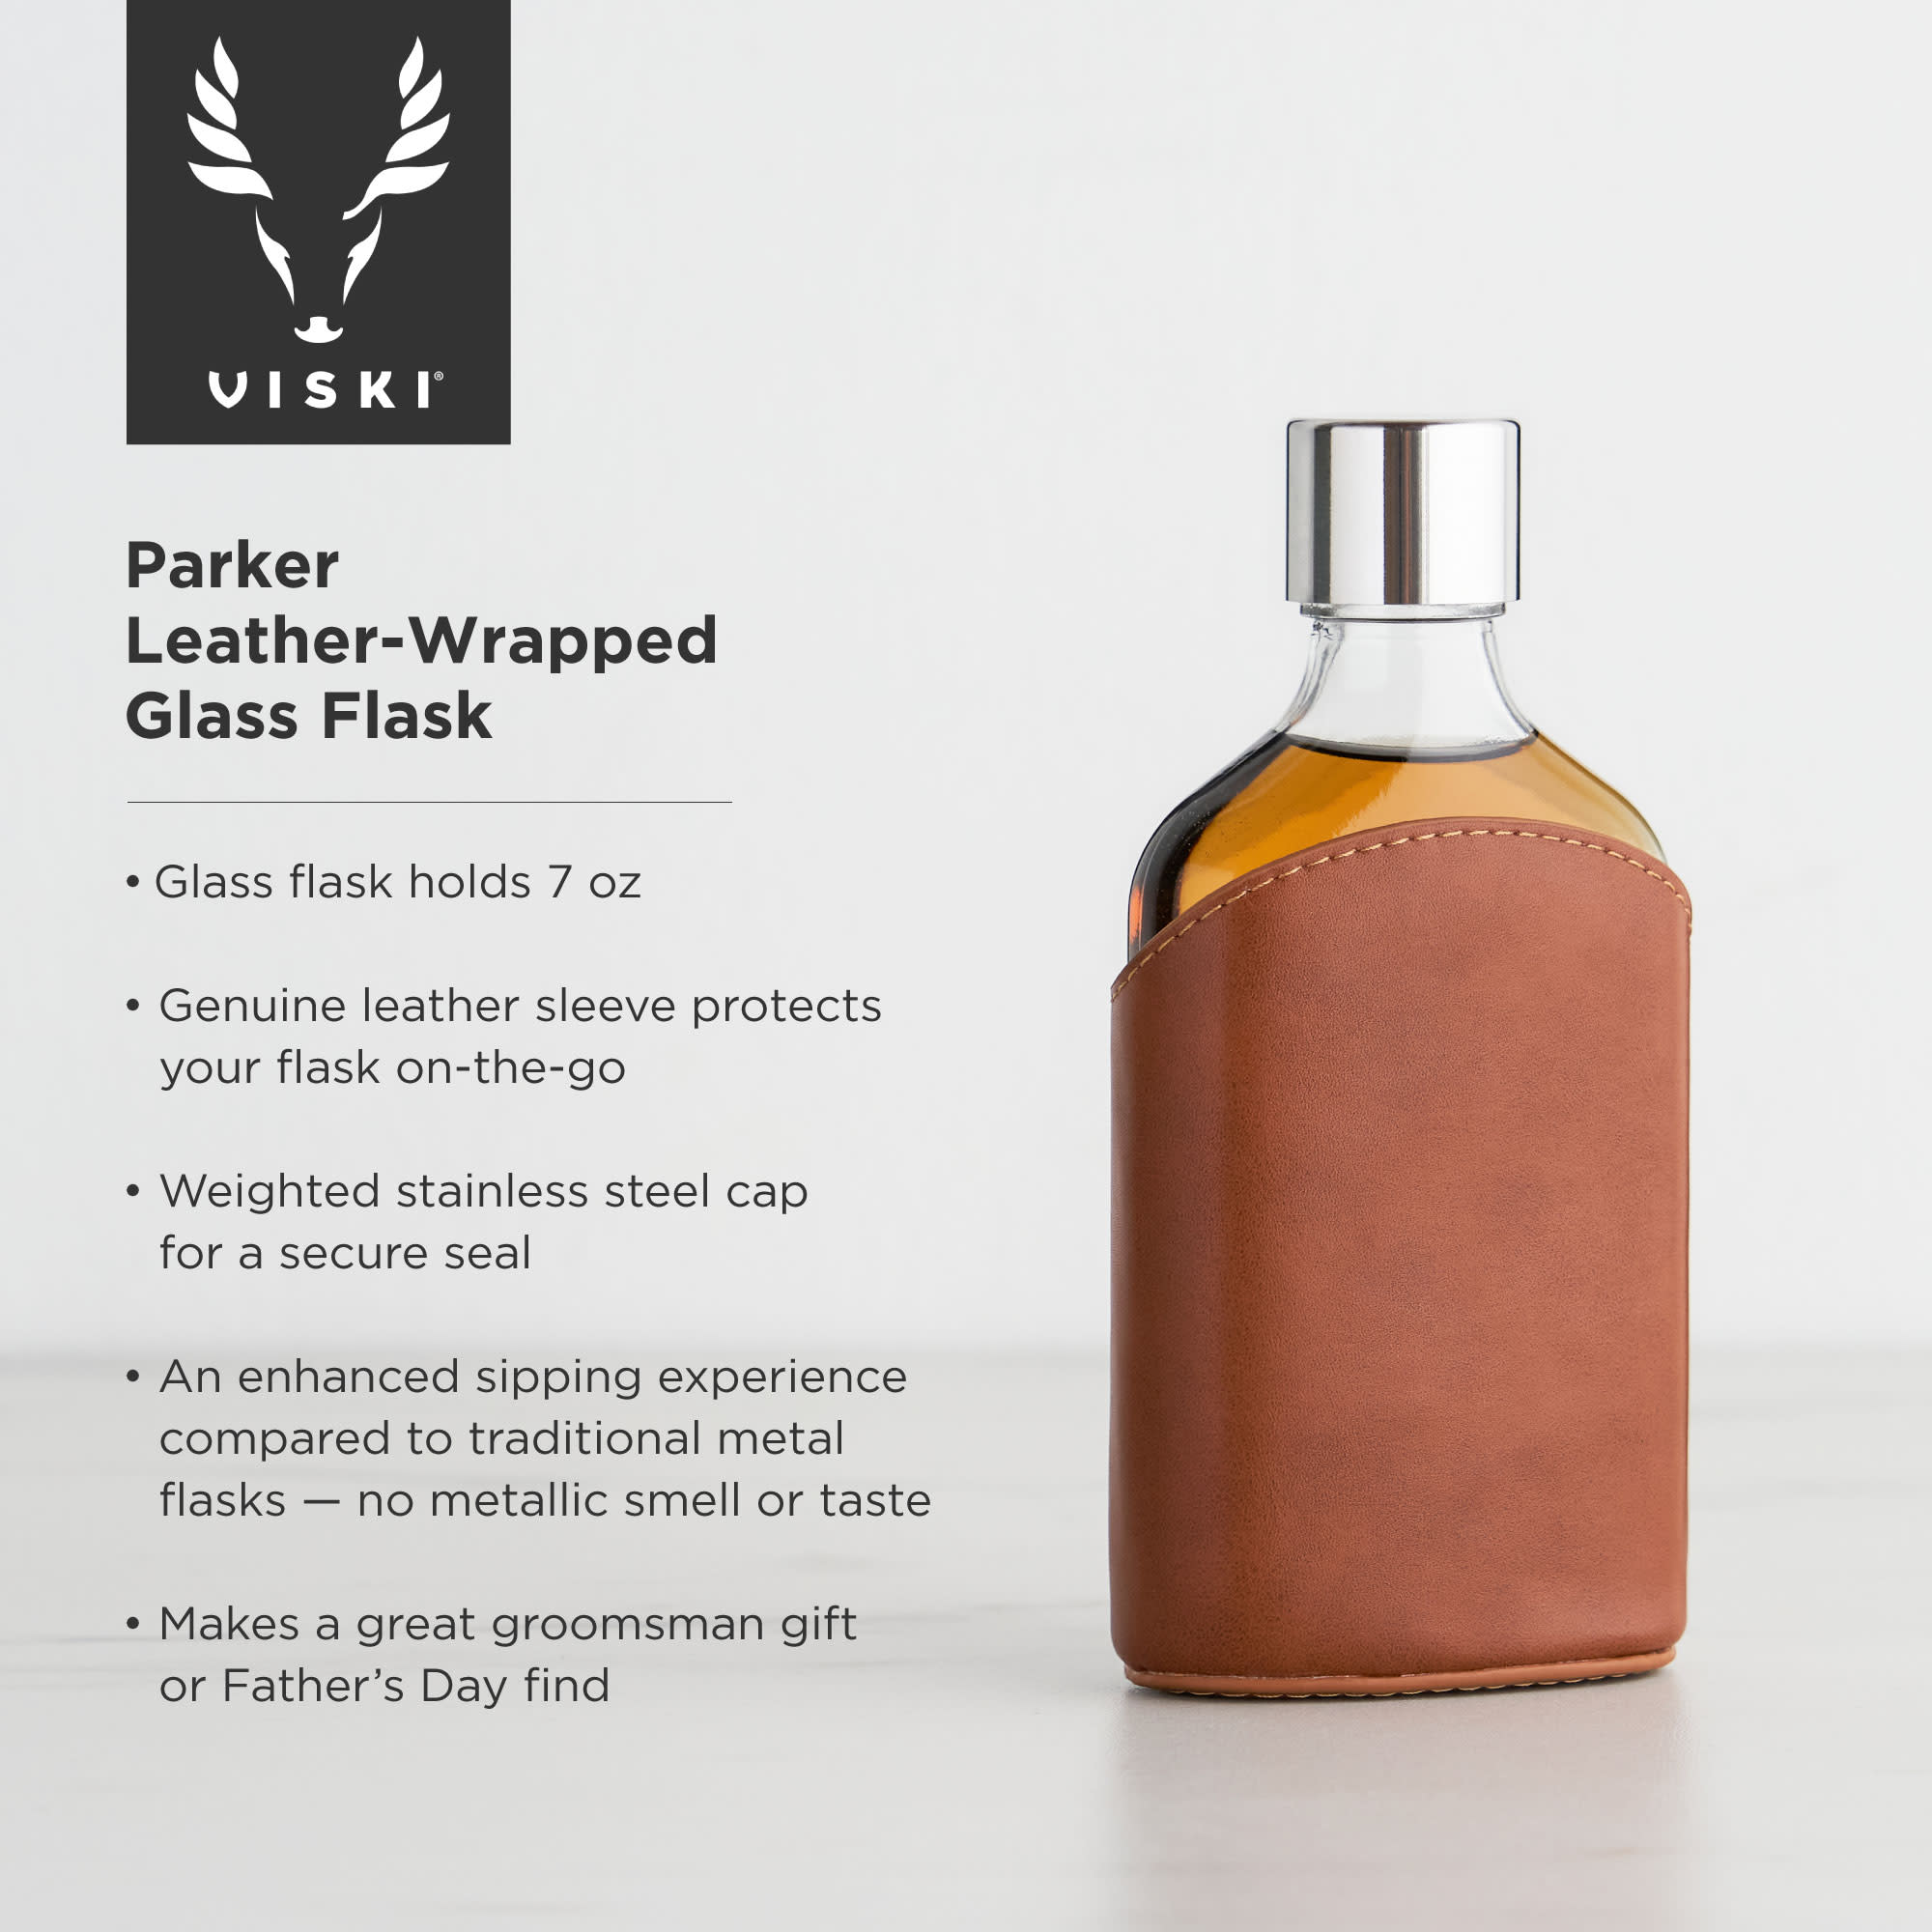 Parker Leather-Wrapped Glass Flask by Viski